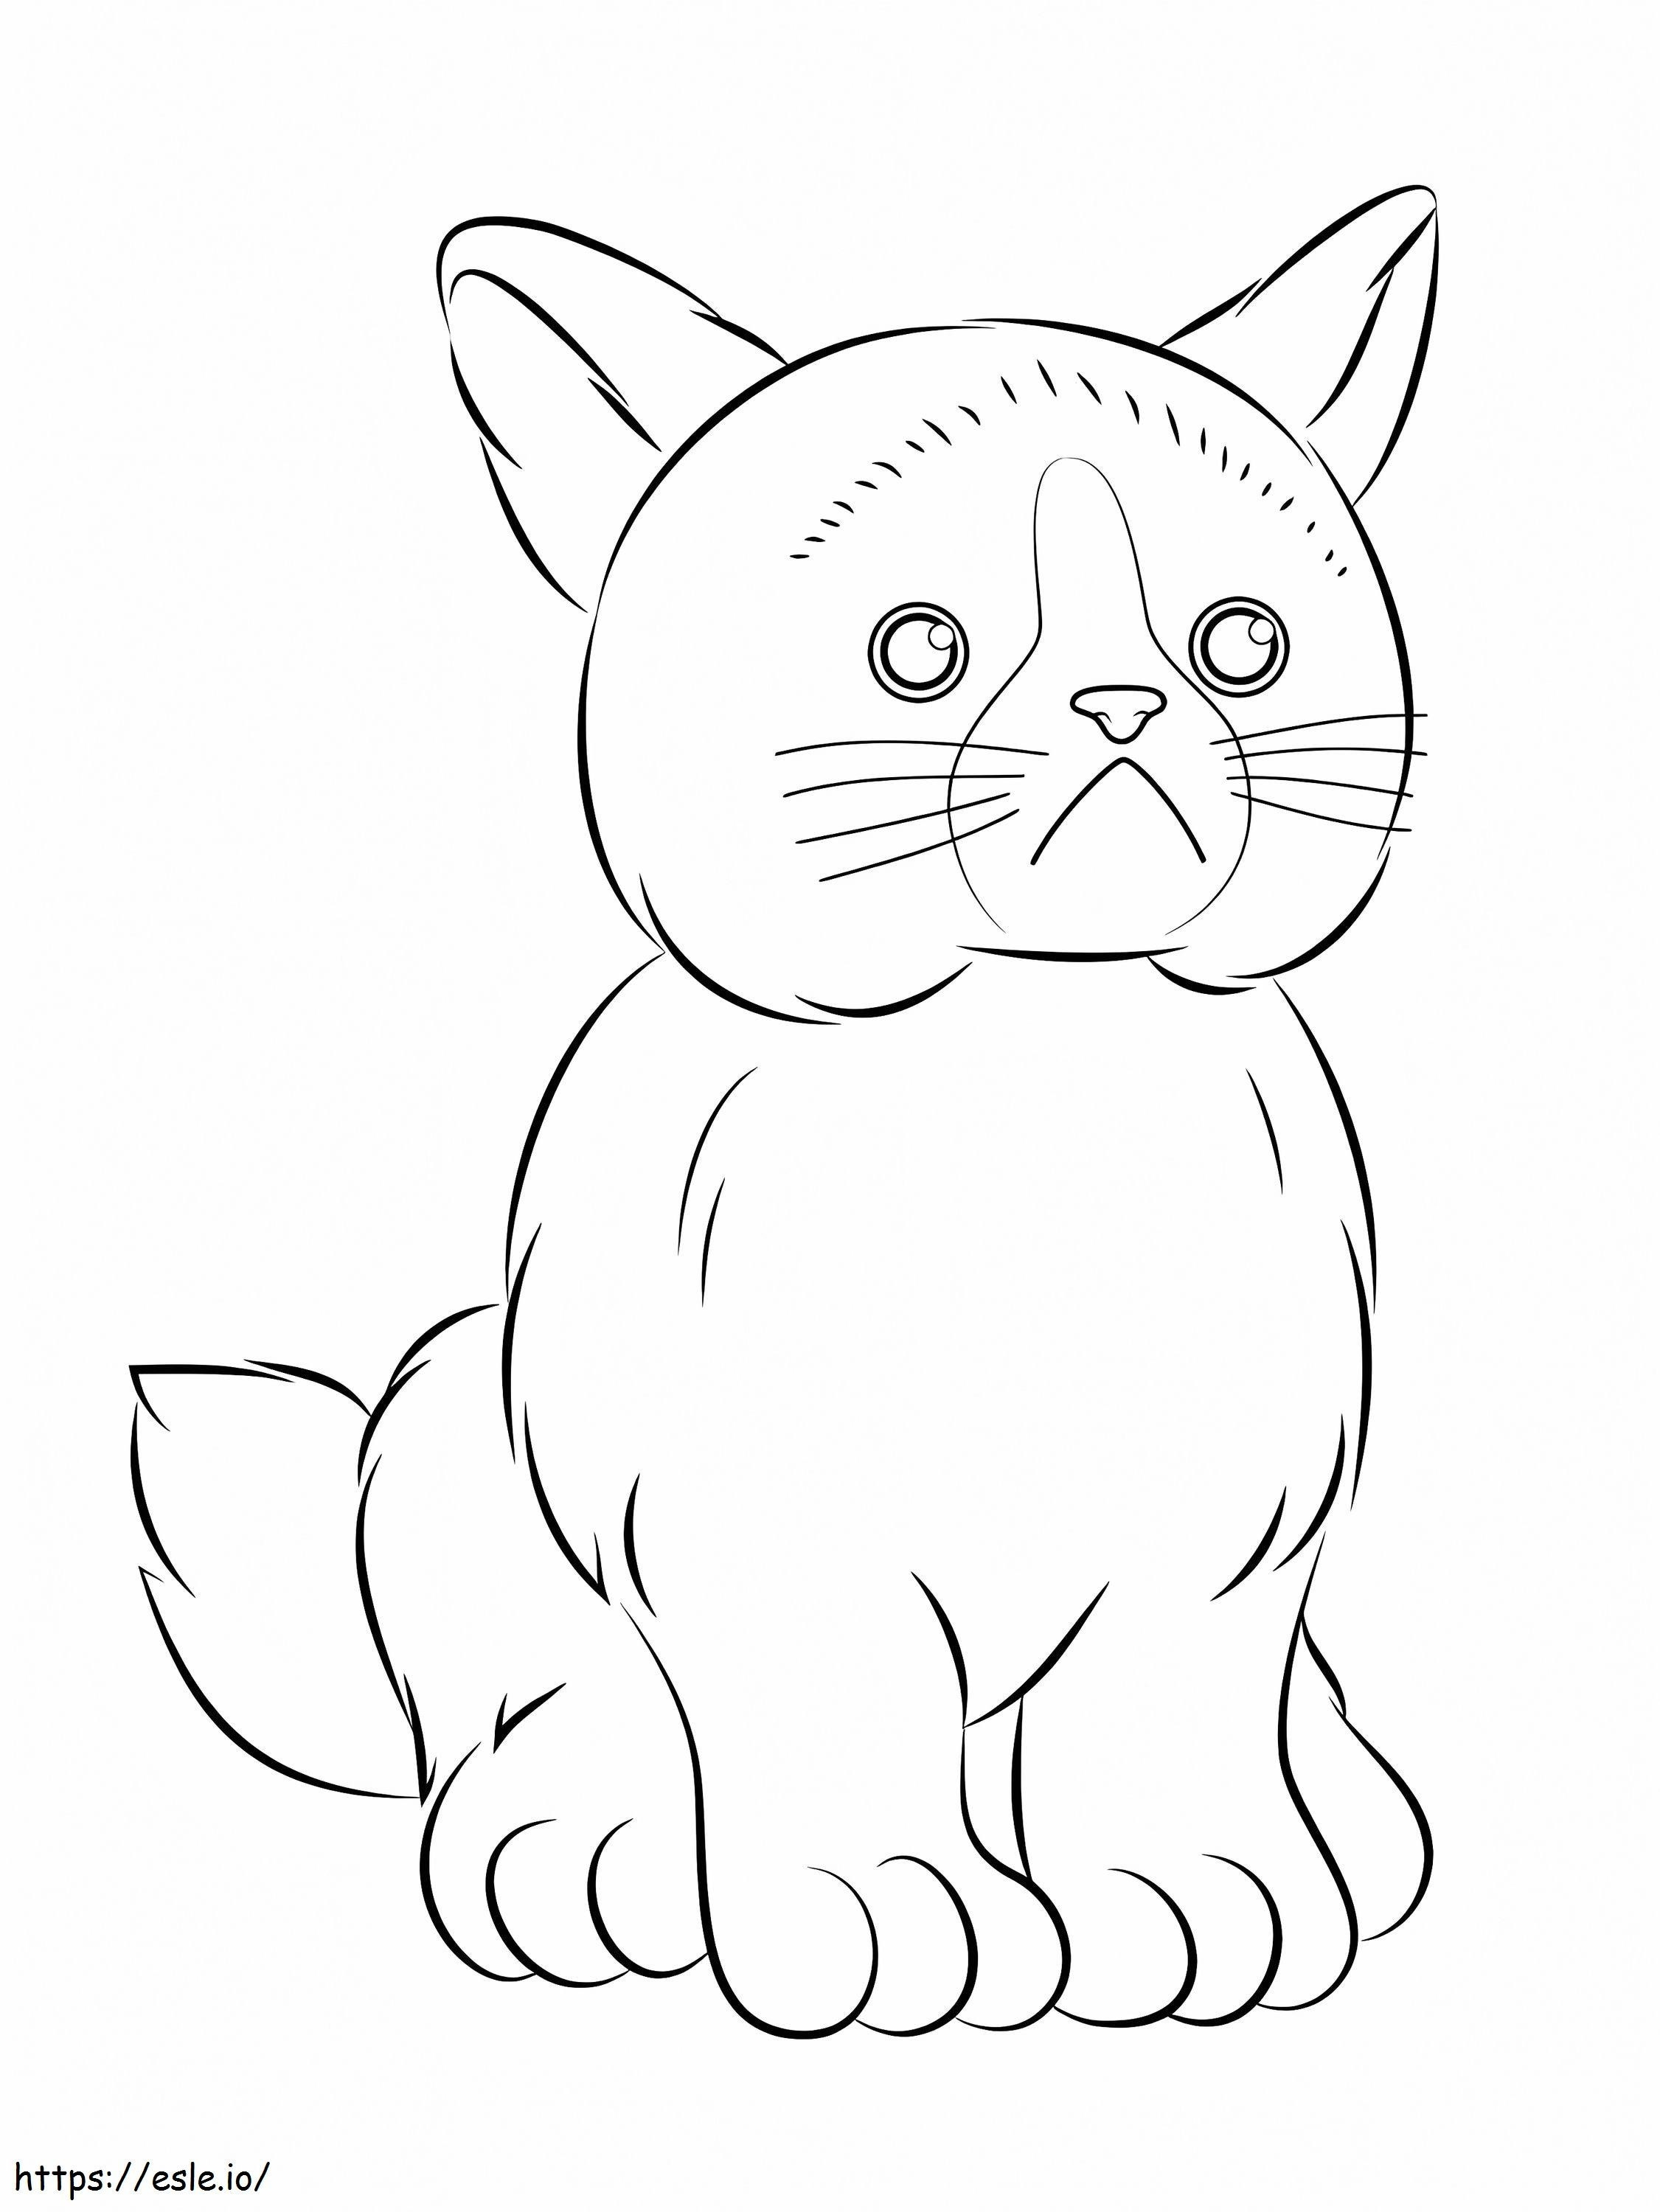 Webkinz Grumpy Cat coloring page